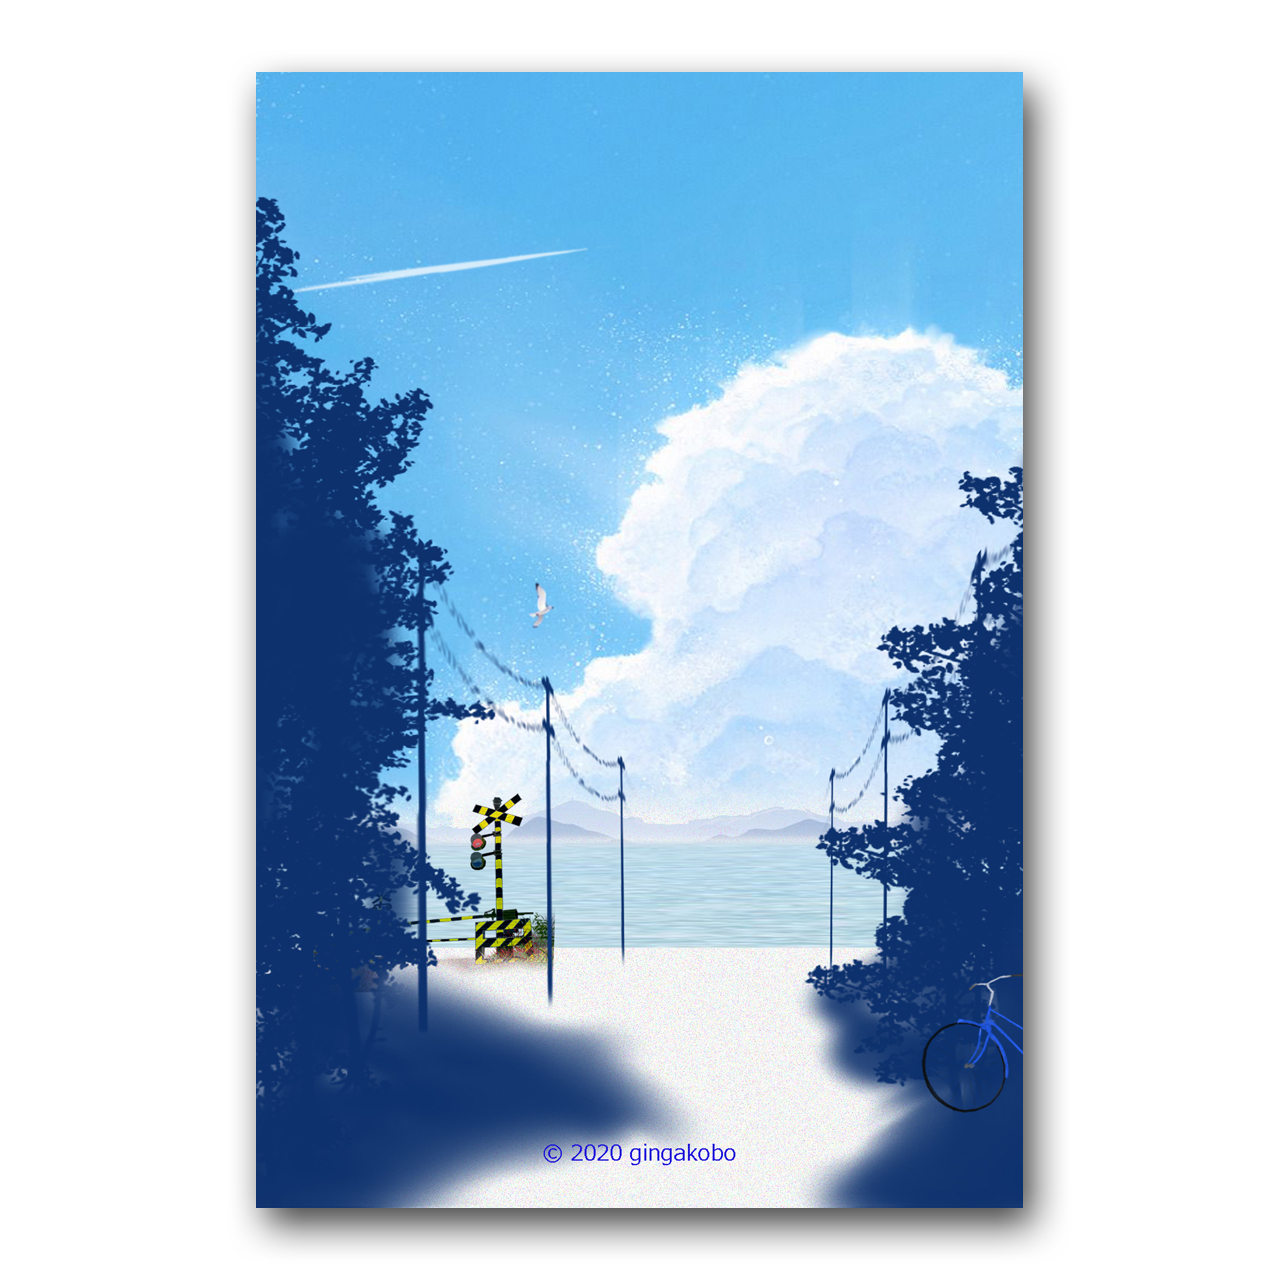 あの日 君と見た海岸通り ほっこり癒しのイラストポストカード2枚組 No 1109 Iichi ハンドメイド クラフト作品 手仕事品の通販